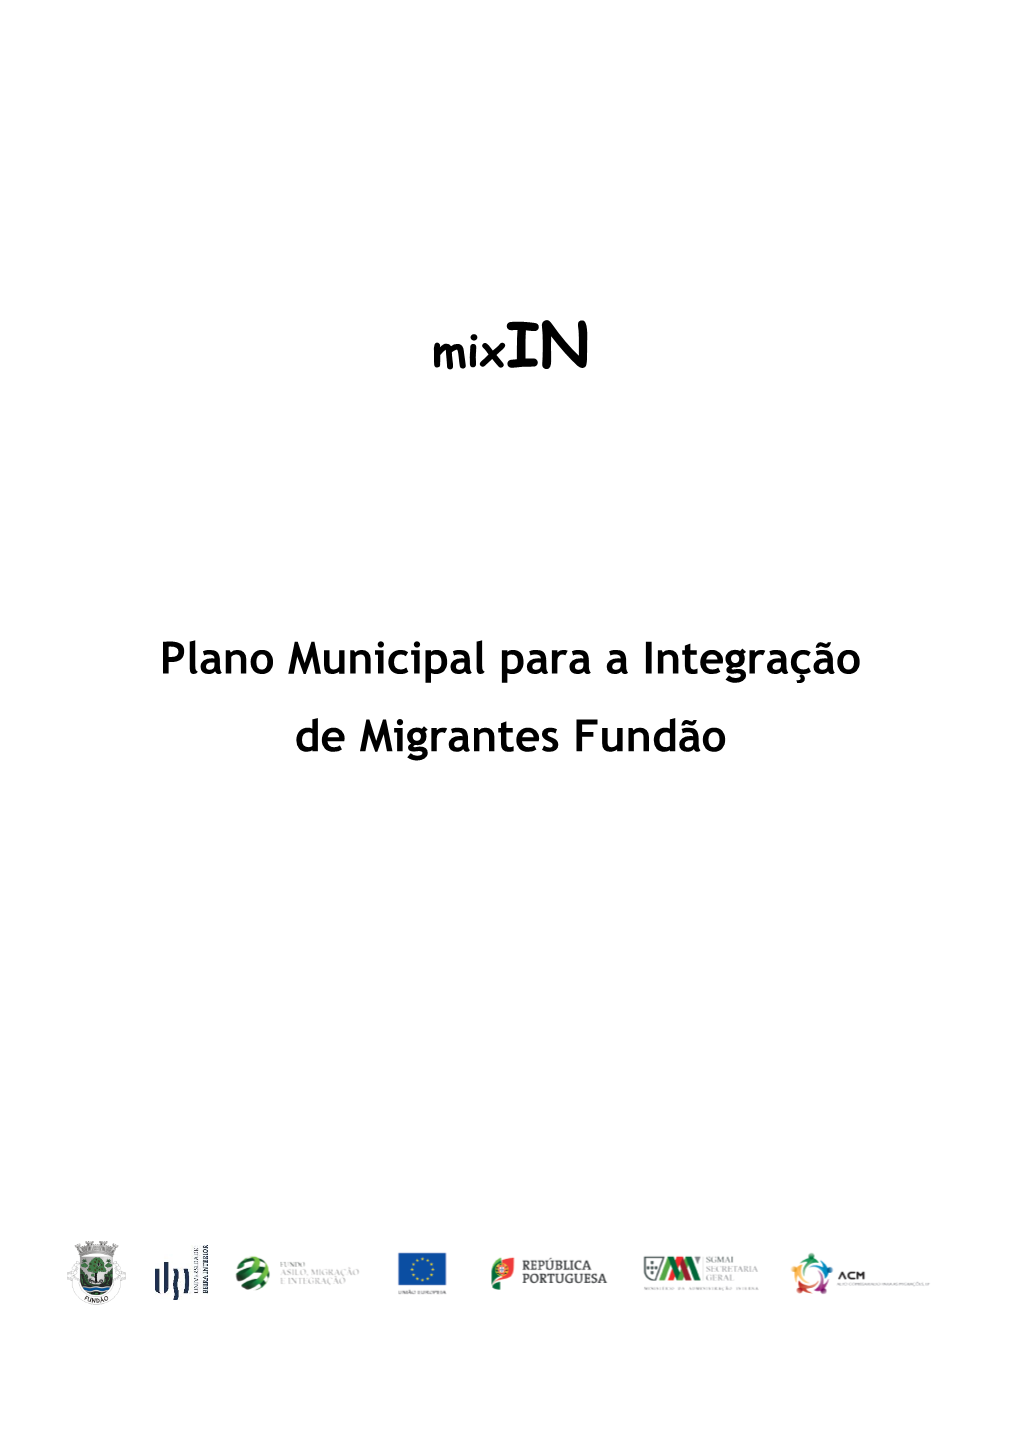 Mixin Plano Municipal Para a Integração De Migrantes Fundão